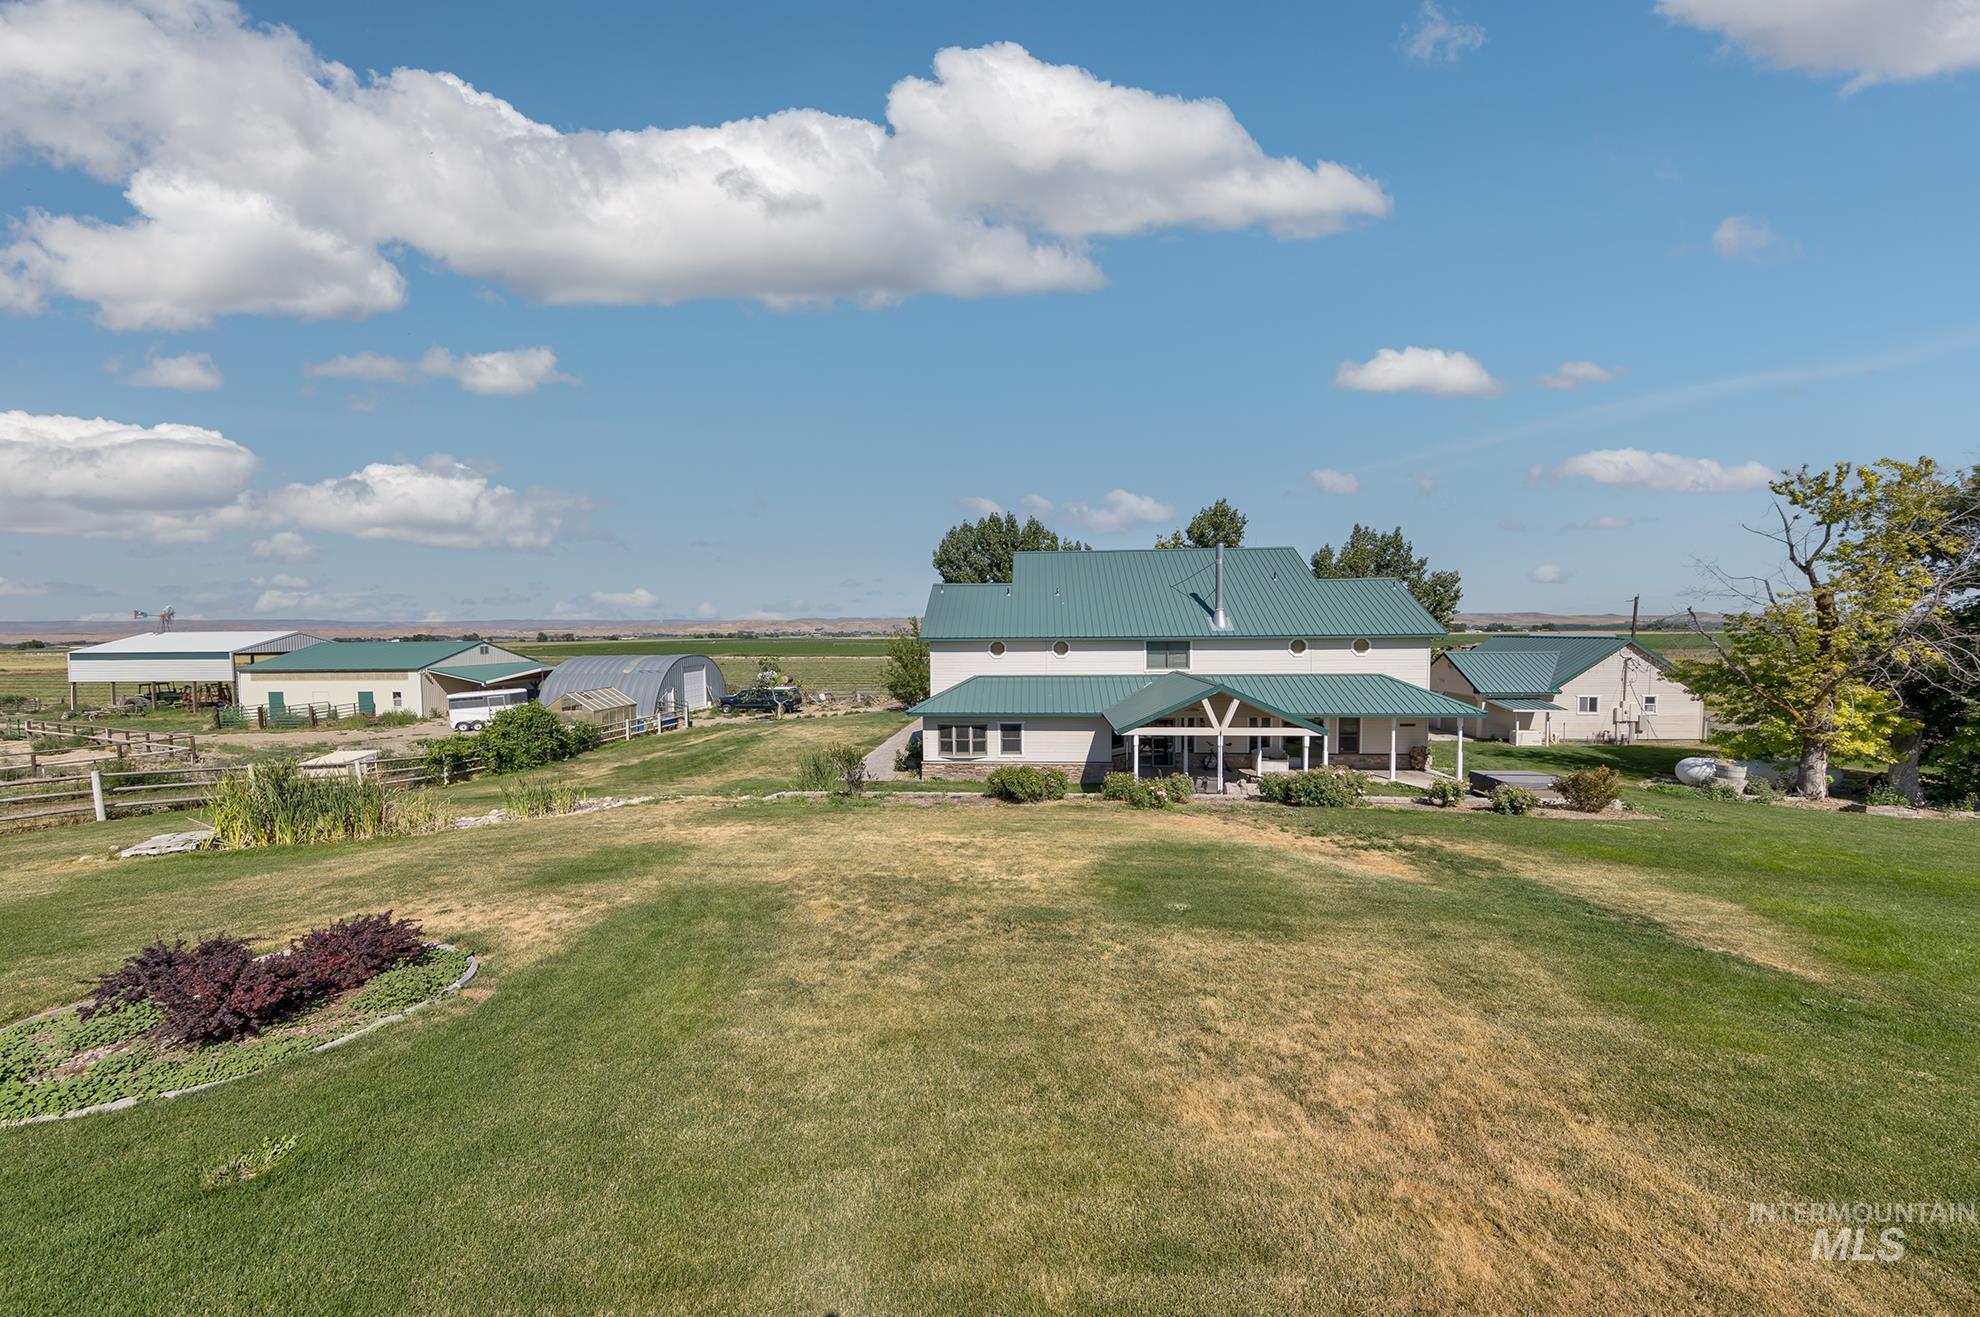 268 Grove rd, Ontario, Oregon 97914, 5 Bedrooms, 3.5 Bathrooms, Farm & Ranch For Sale, Price $1,150,000,MLS 98902017